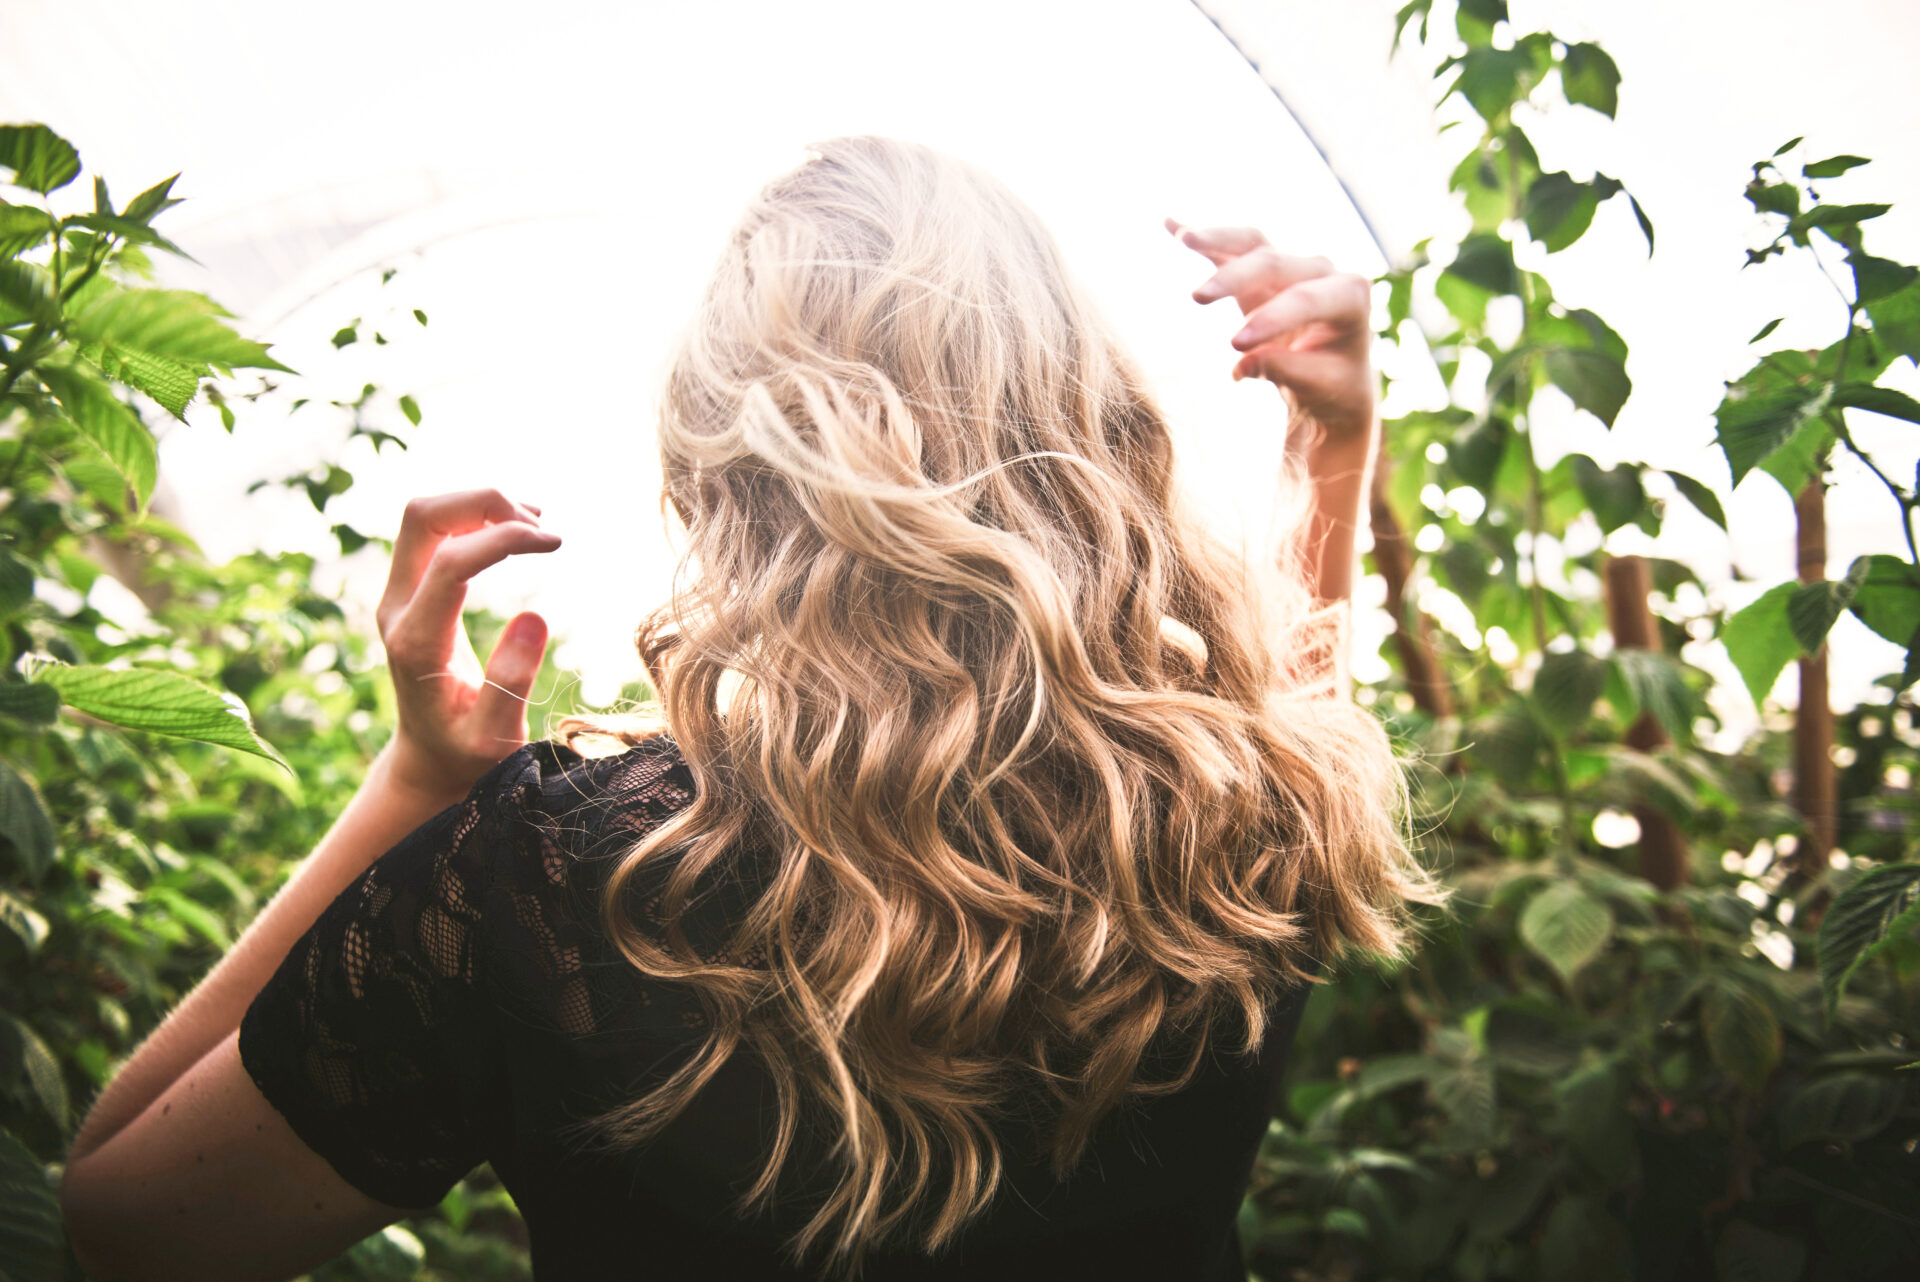 Hello les filles, aujourd'hui, je vais vous parler de cheveux, et plus précisément de soin capillaire au naturel. Une approche douce et respectueuse qui permet de sublimer notre chevelure de manière durable. Prendre soin de nos cheveux : Astuces efficaces.